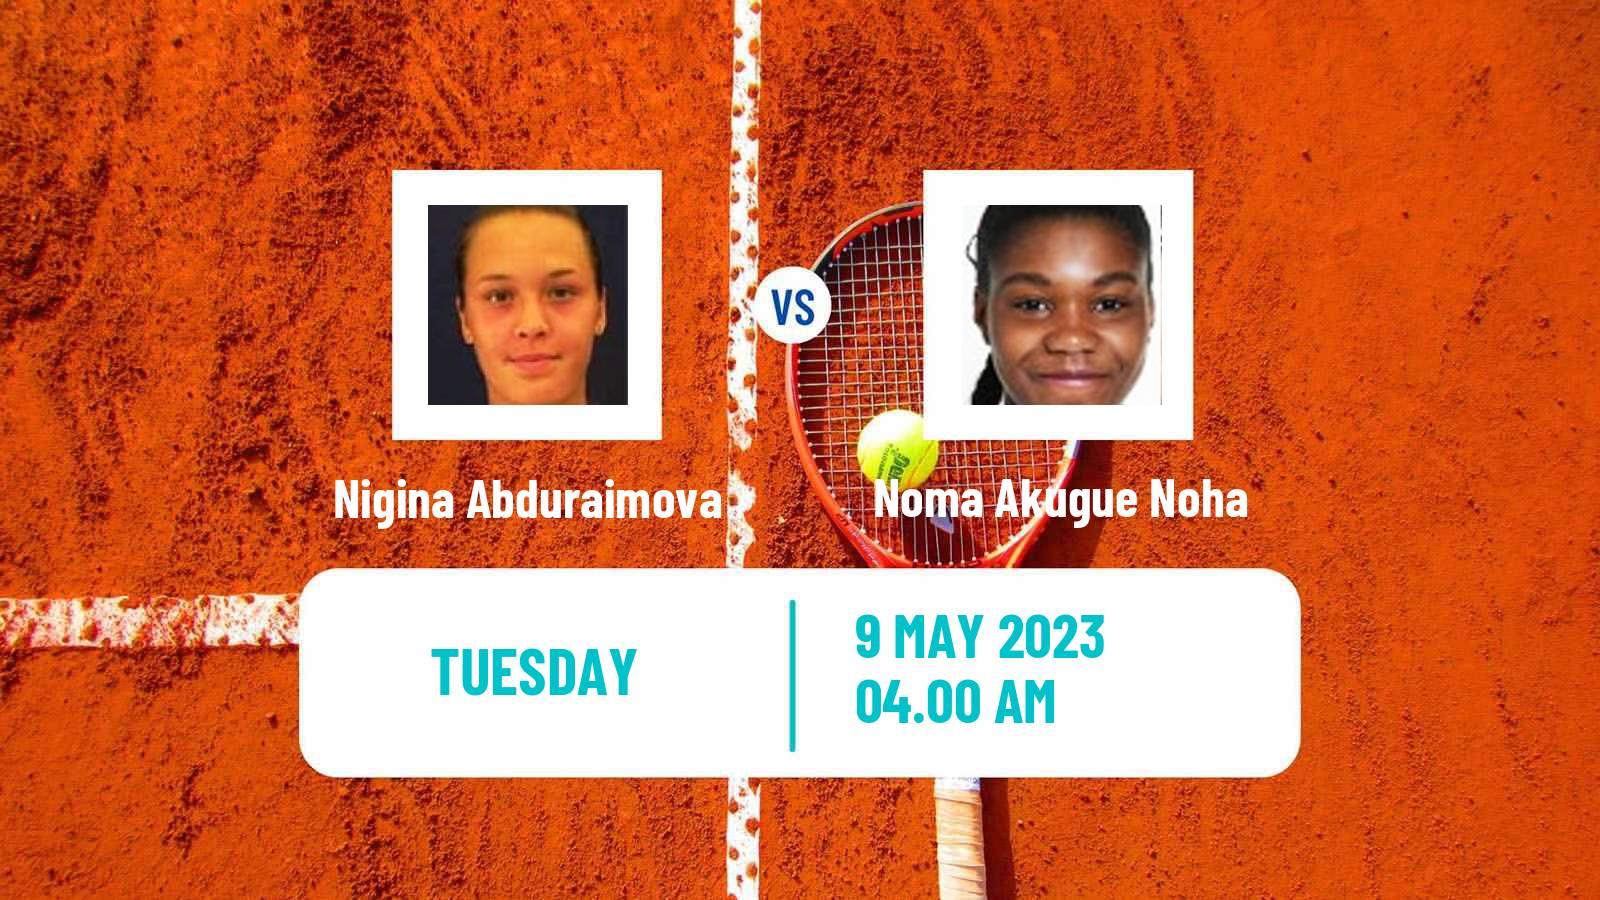 Tennis ITF Tournaments Nigina Abduraimova - Noma Akugue Noha